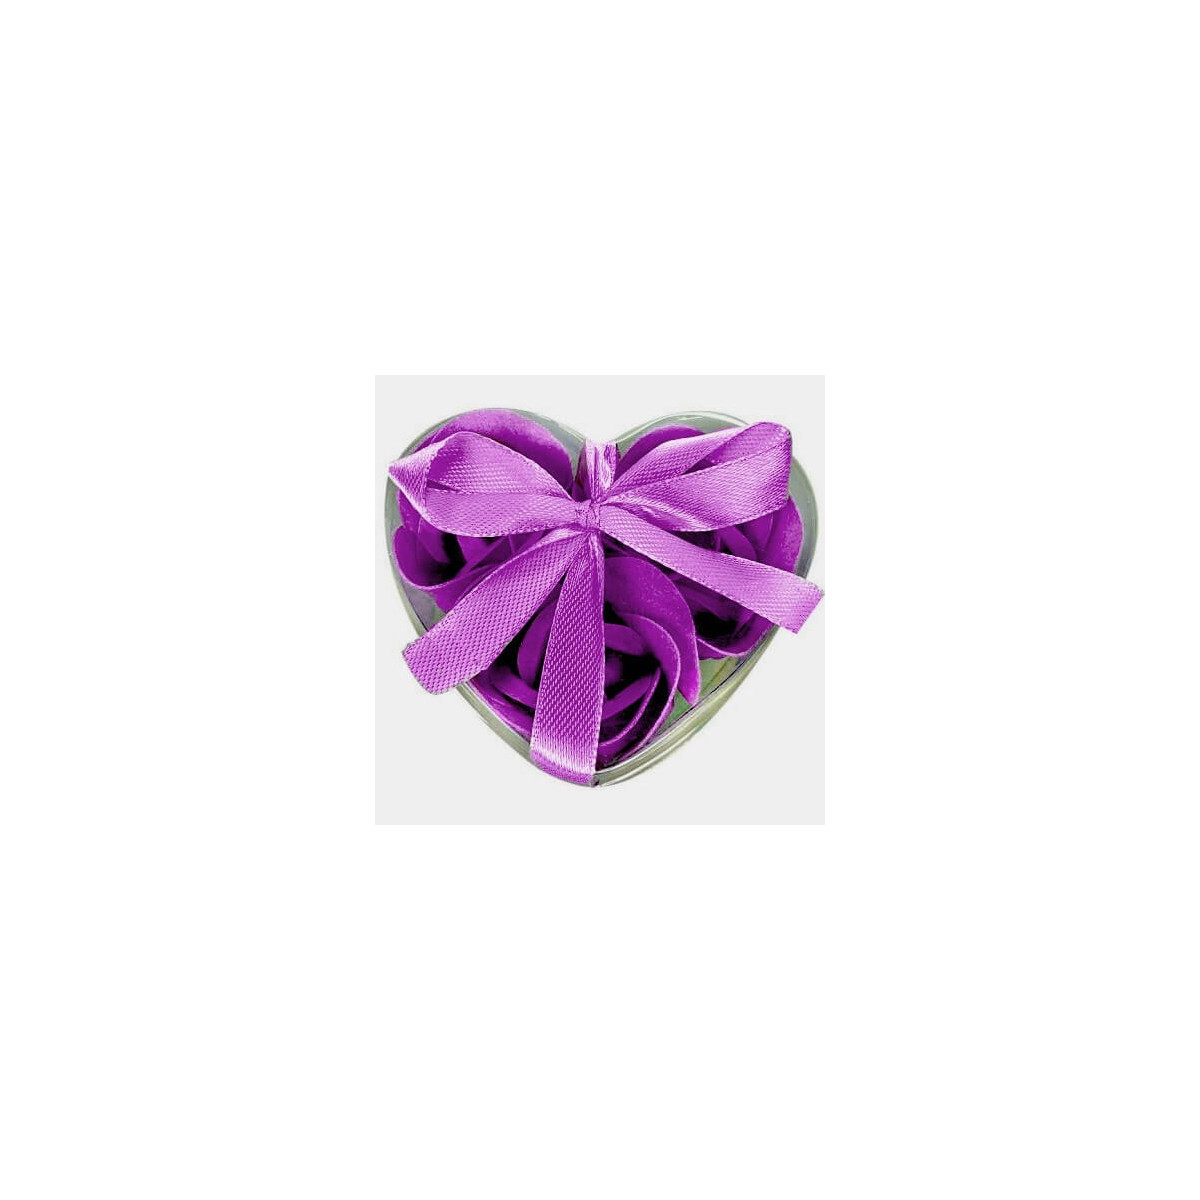 Souvenirs cadeaux savons originaux violet